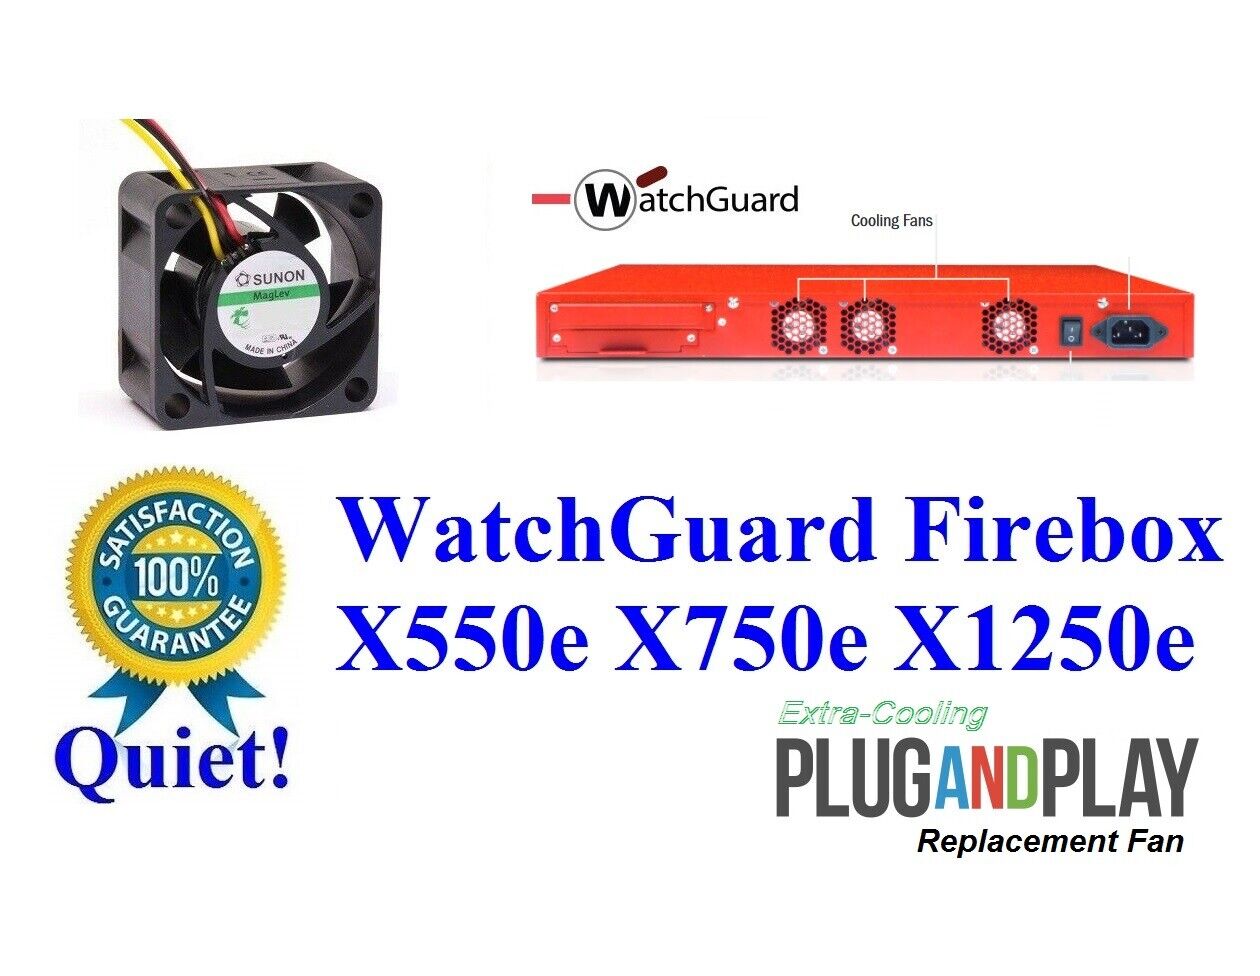 New Quiet version 13~18dBA Noise Fan for WatchGuard Firebox X550e X750e X1250e 